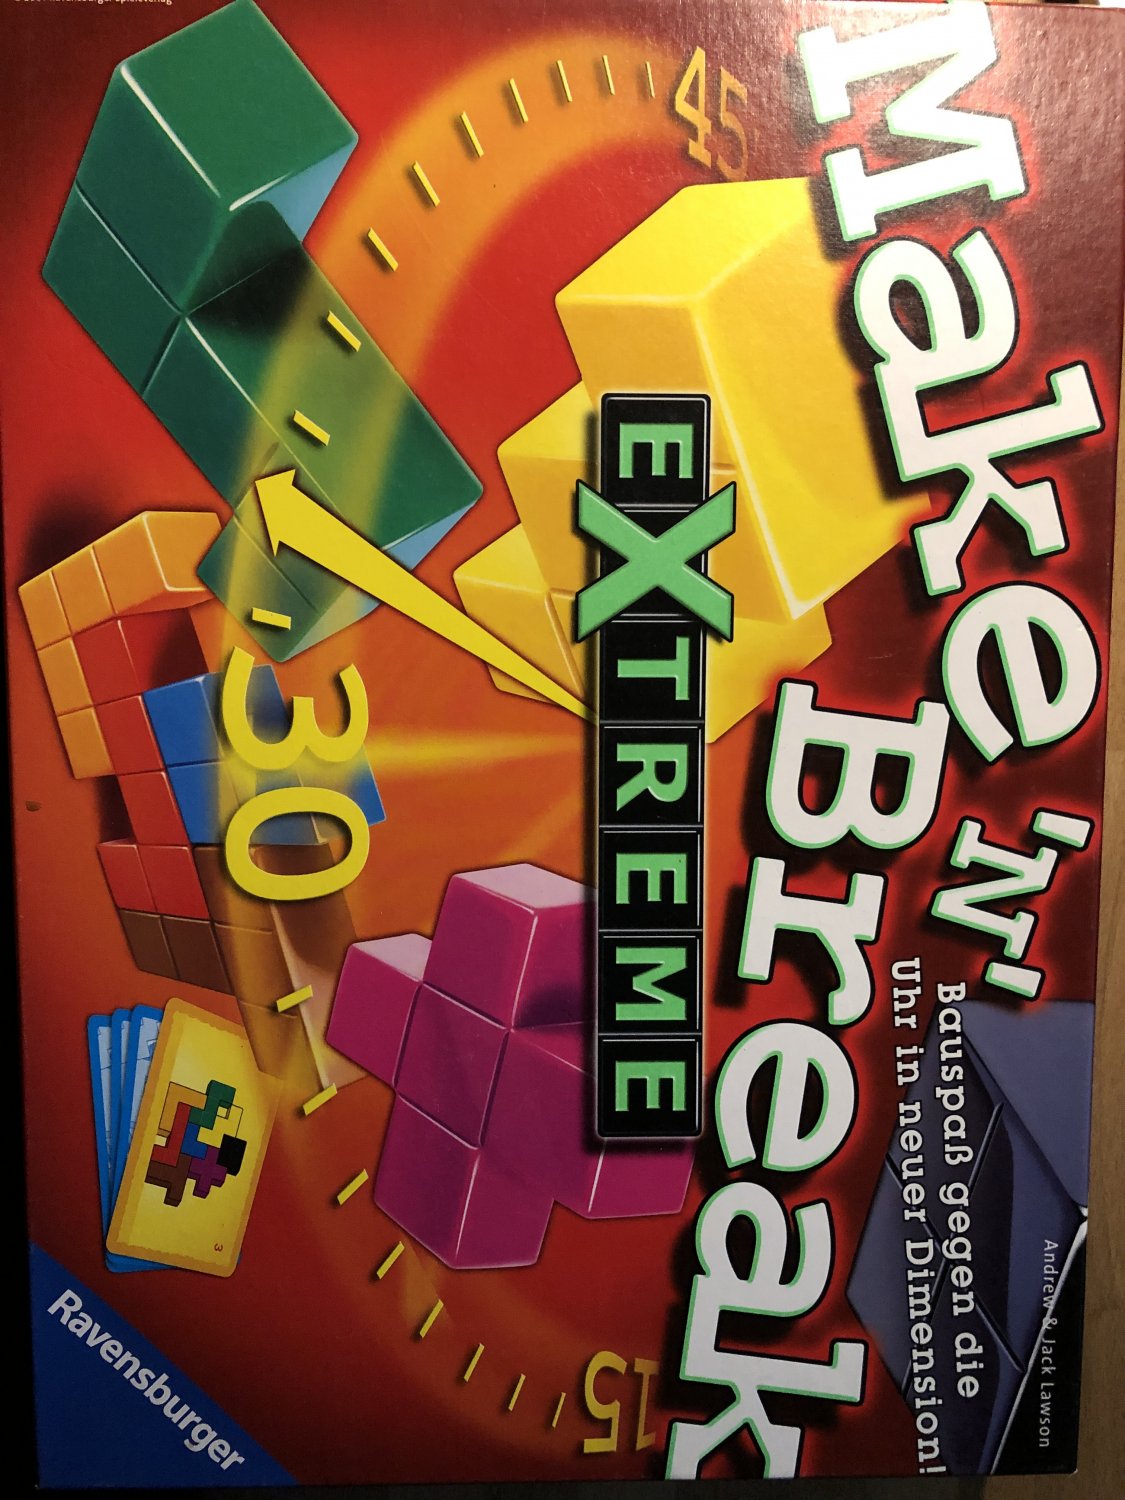 Ravensburger 26432 - Make \'n\' Break Extreme “ (Andrew & Jack Lawson) – Spiel  gebraucht kaufen – A02nlGEX41ZZE